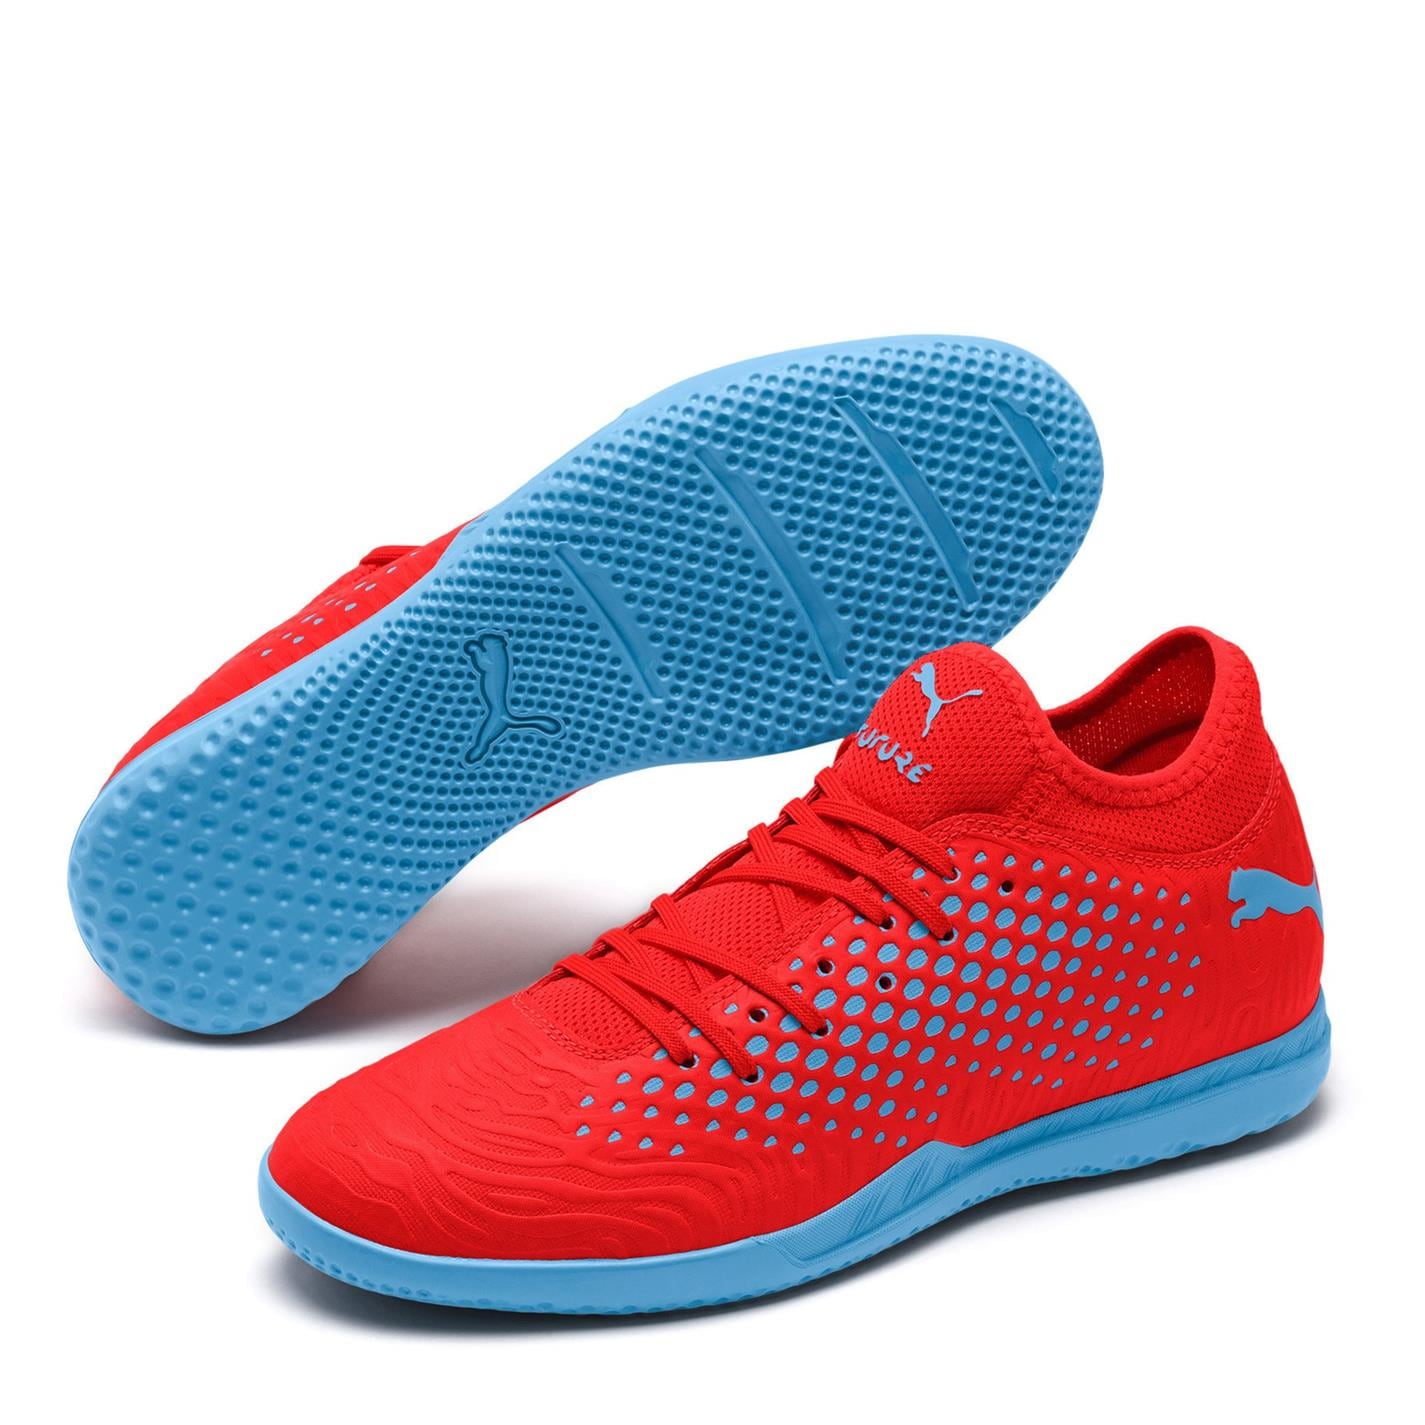 Adidasi sport Puma Future 19.4 Indoor rosu albastru